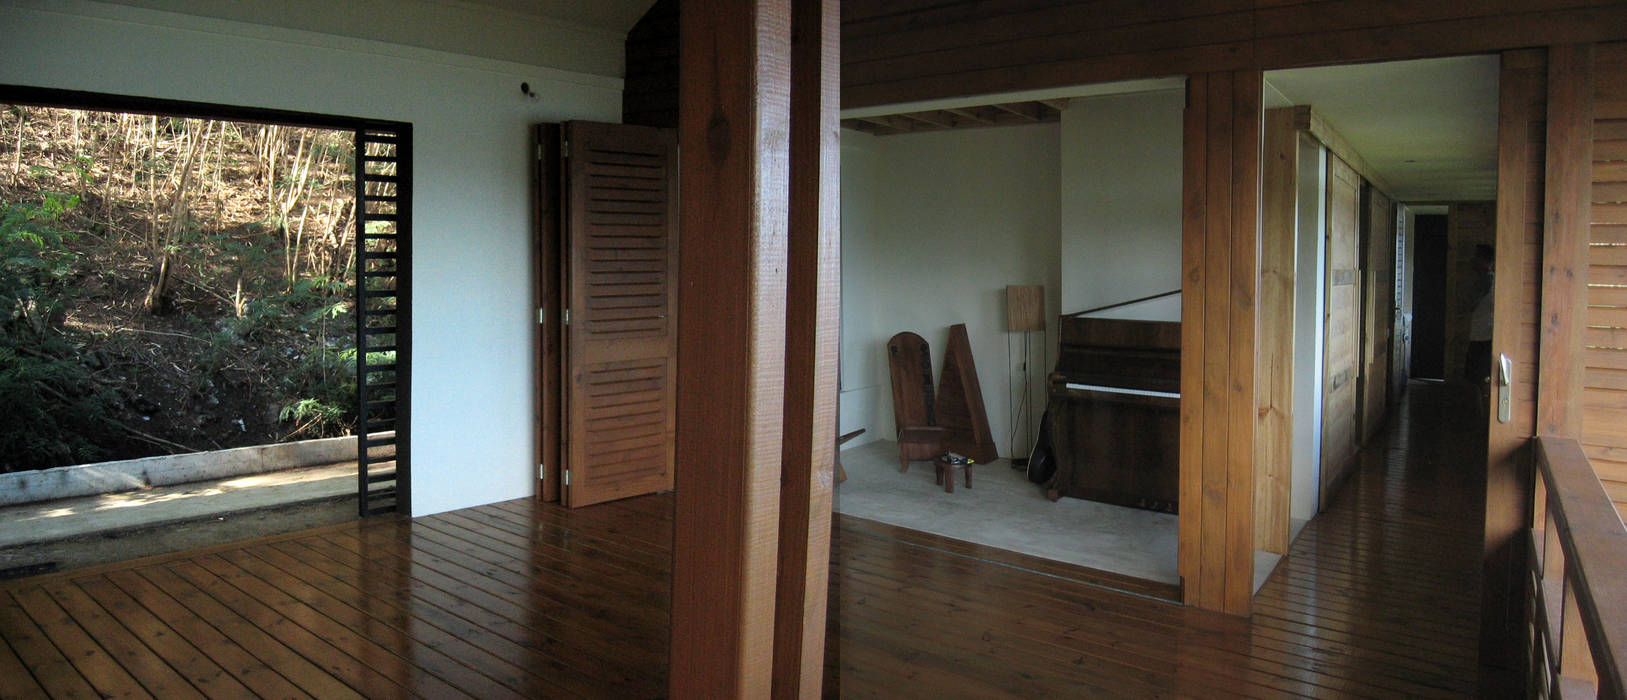 GANNE house - living room/music lounge STUDY CASE sas d'Architecture Salon tropical